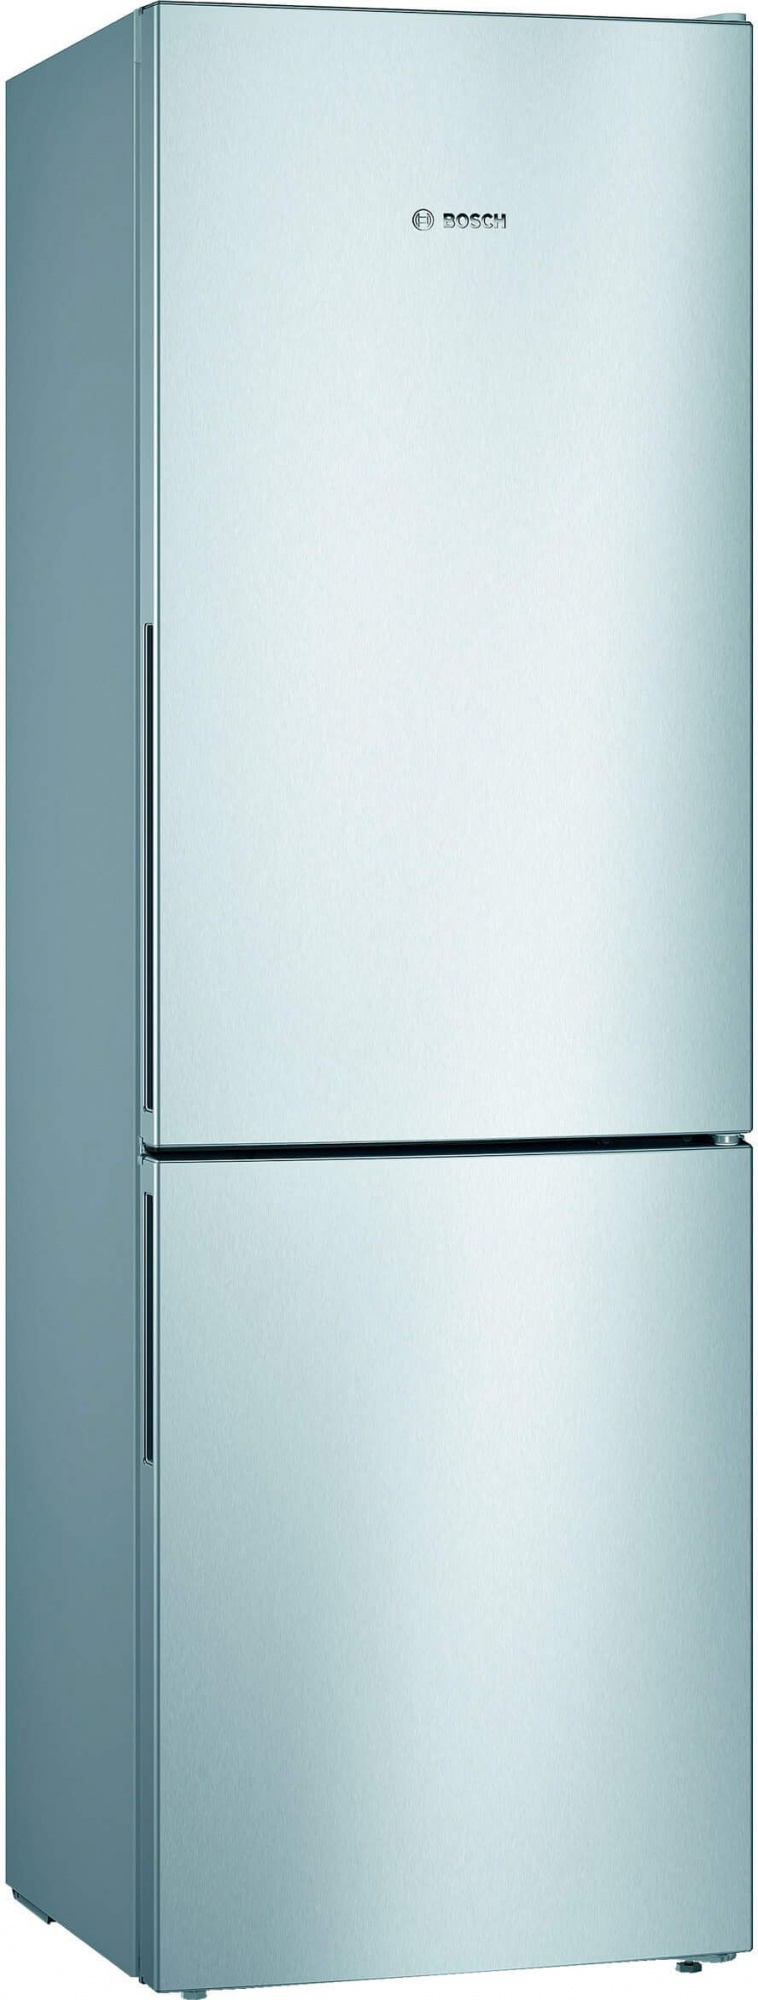 Холодильник Bosch KGV362LEA серебристый, купить в Москве, цены в интернет-магазинах на Мегамаркет